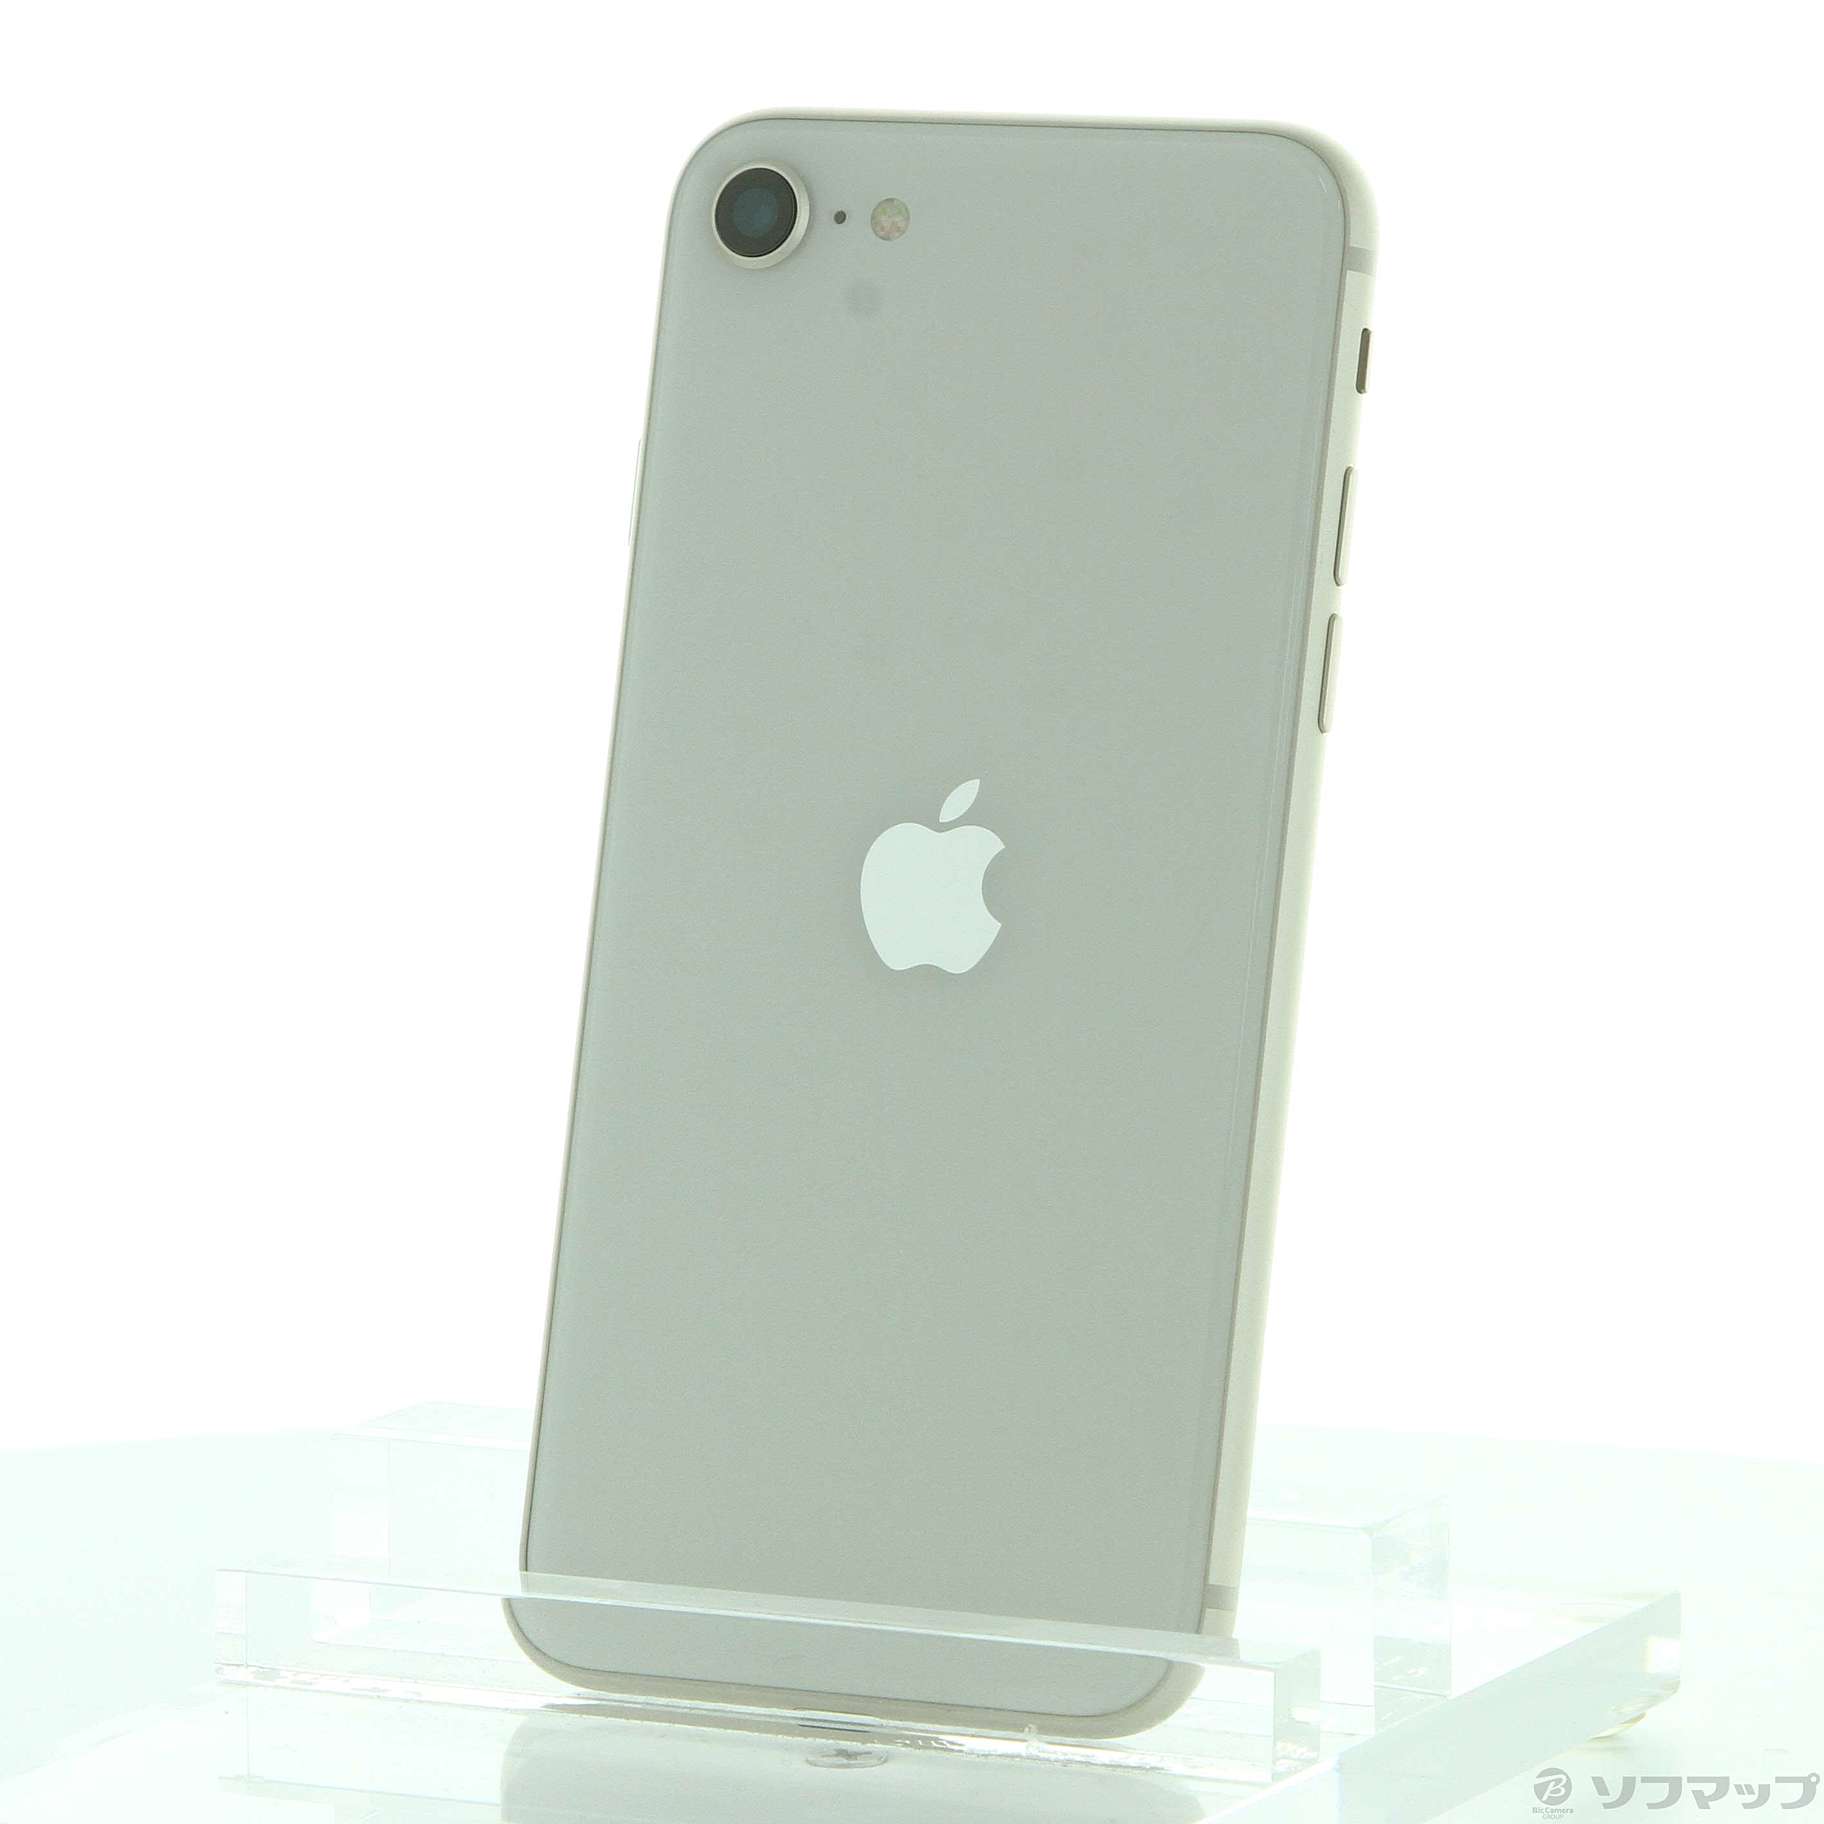 iPhone SE (第3世代) スターライト 128 GB SIMフリー内蔵ストレージ容量128GB